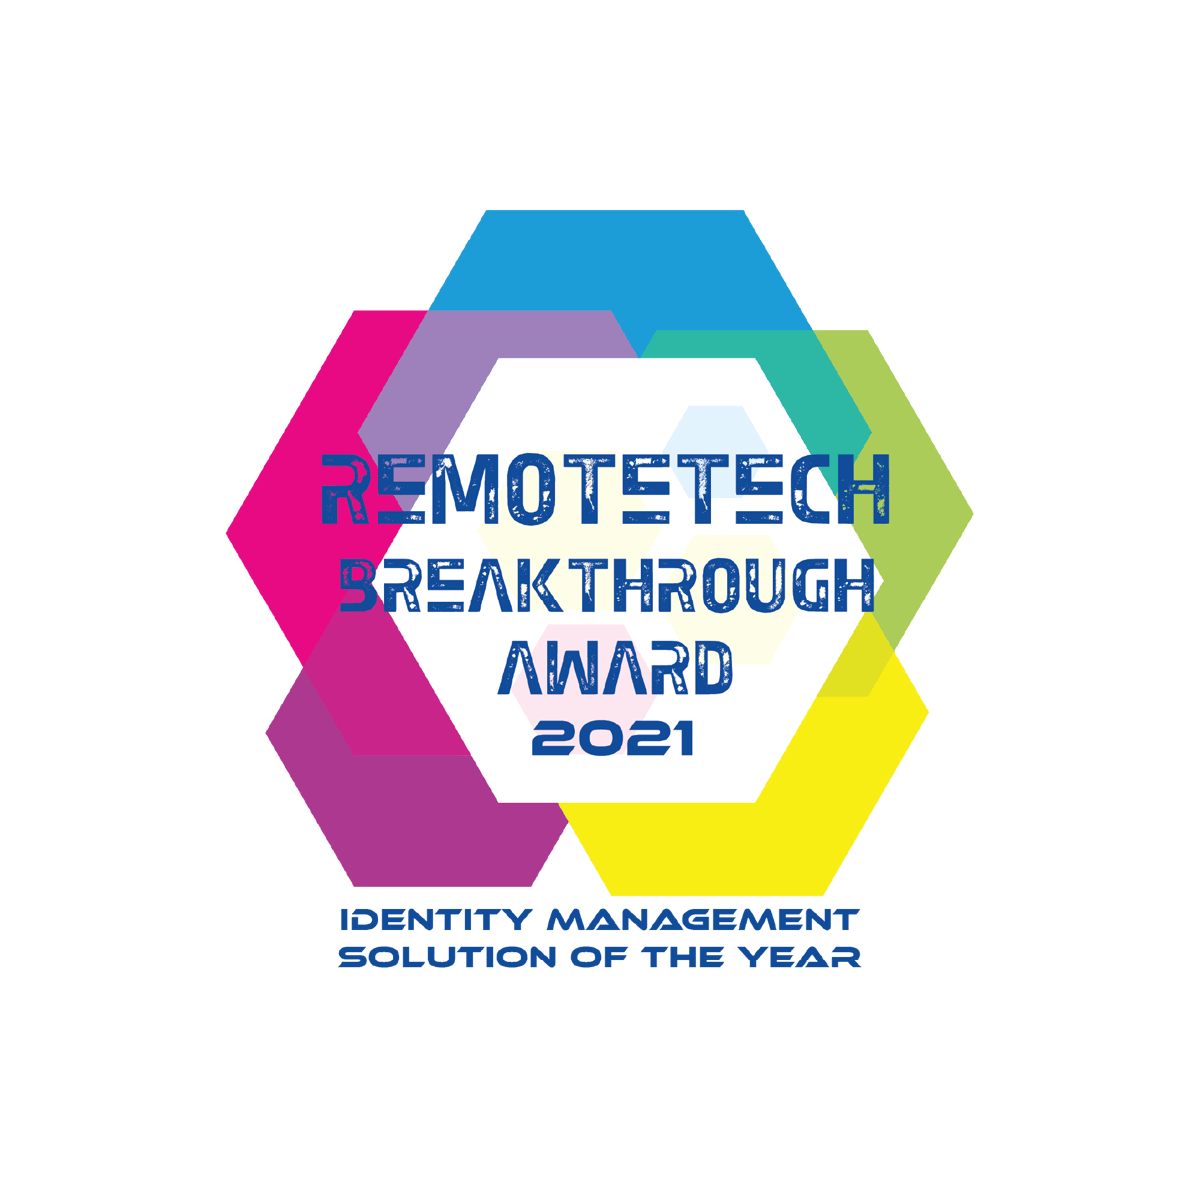 Remotetech Breakthrough Award 2021